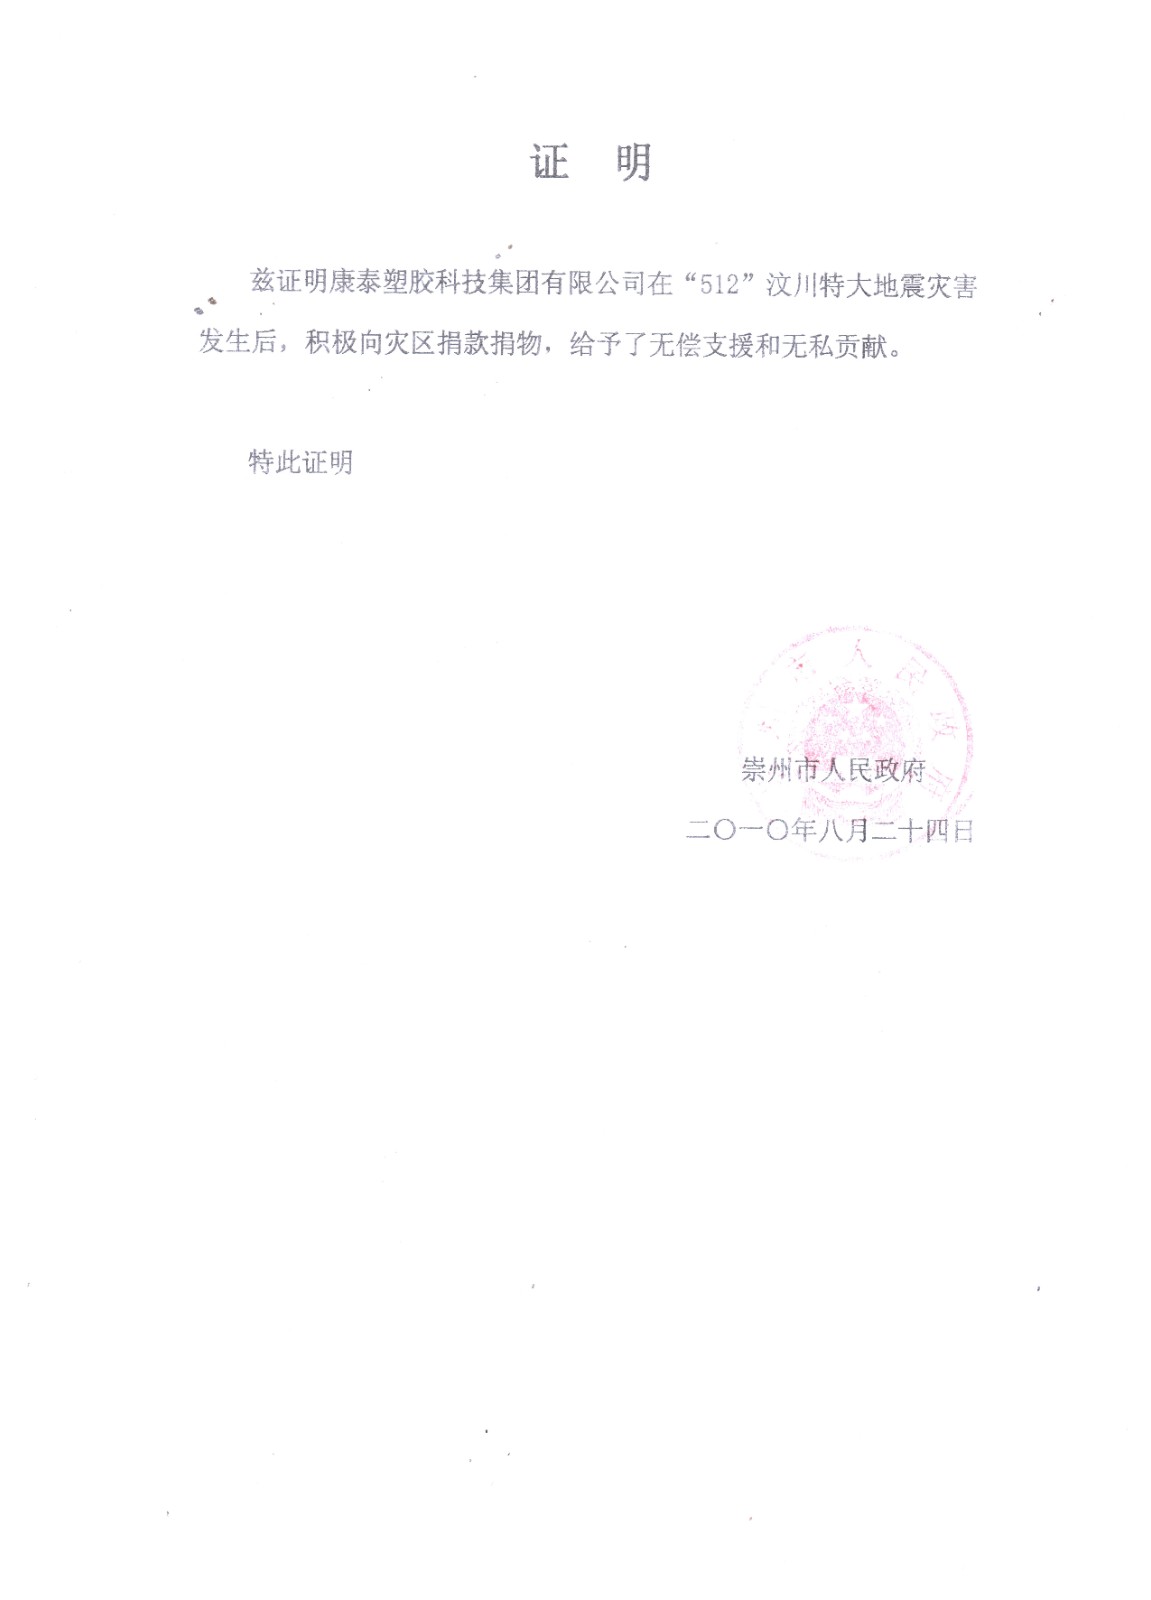 汶川地震捐款捐物证明（崇州市人民政府-2010年8月）.jpg